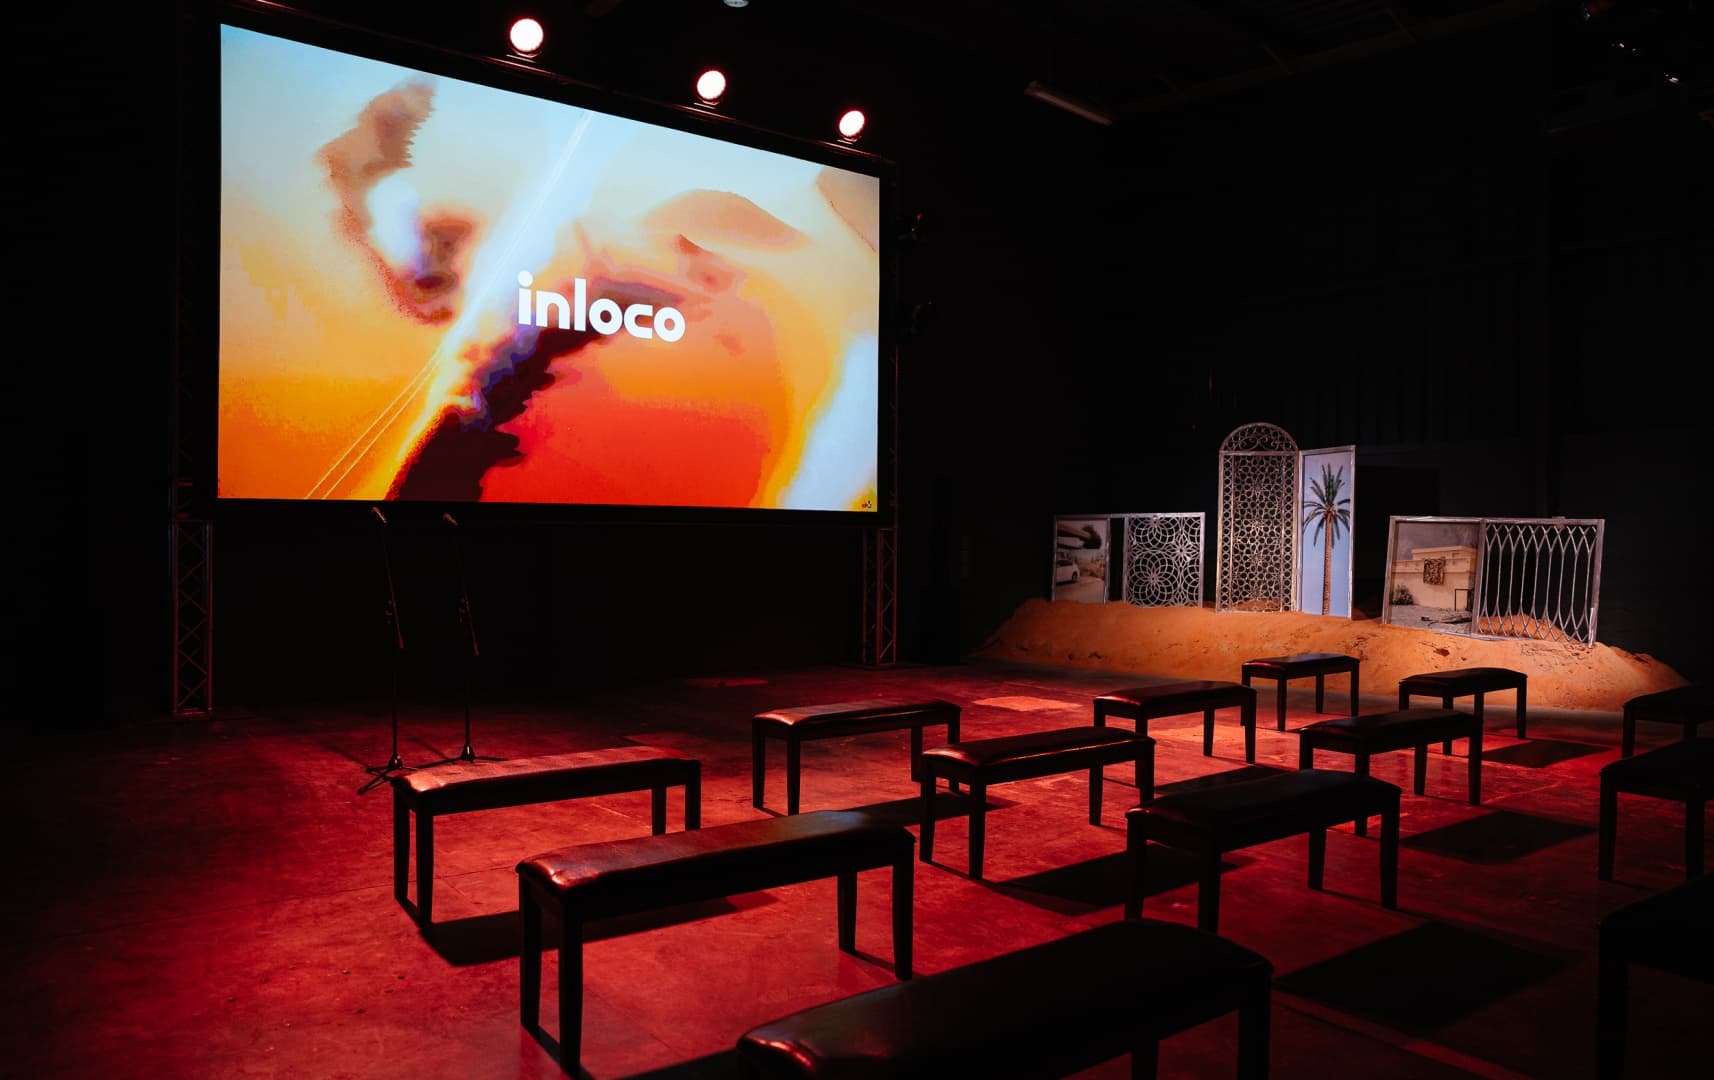 Галерея Inloco представила дебютный выставочный проект в Дубае